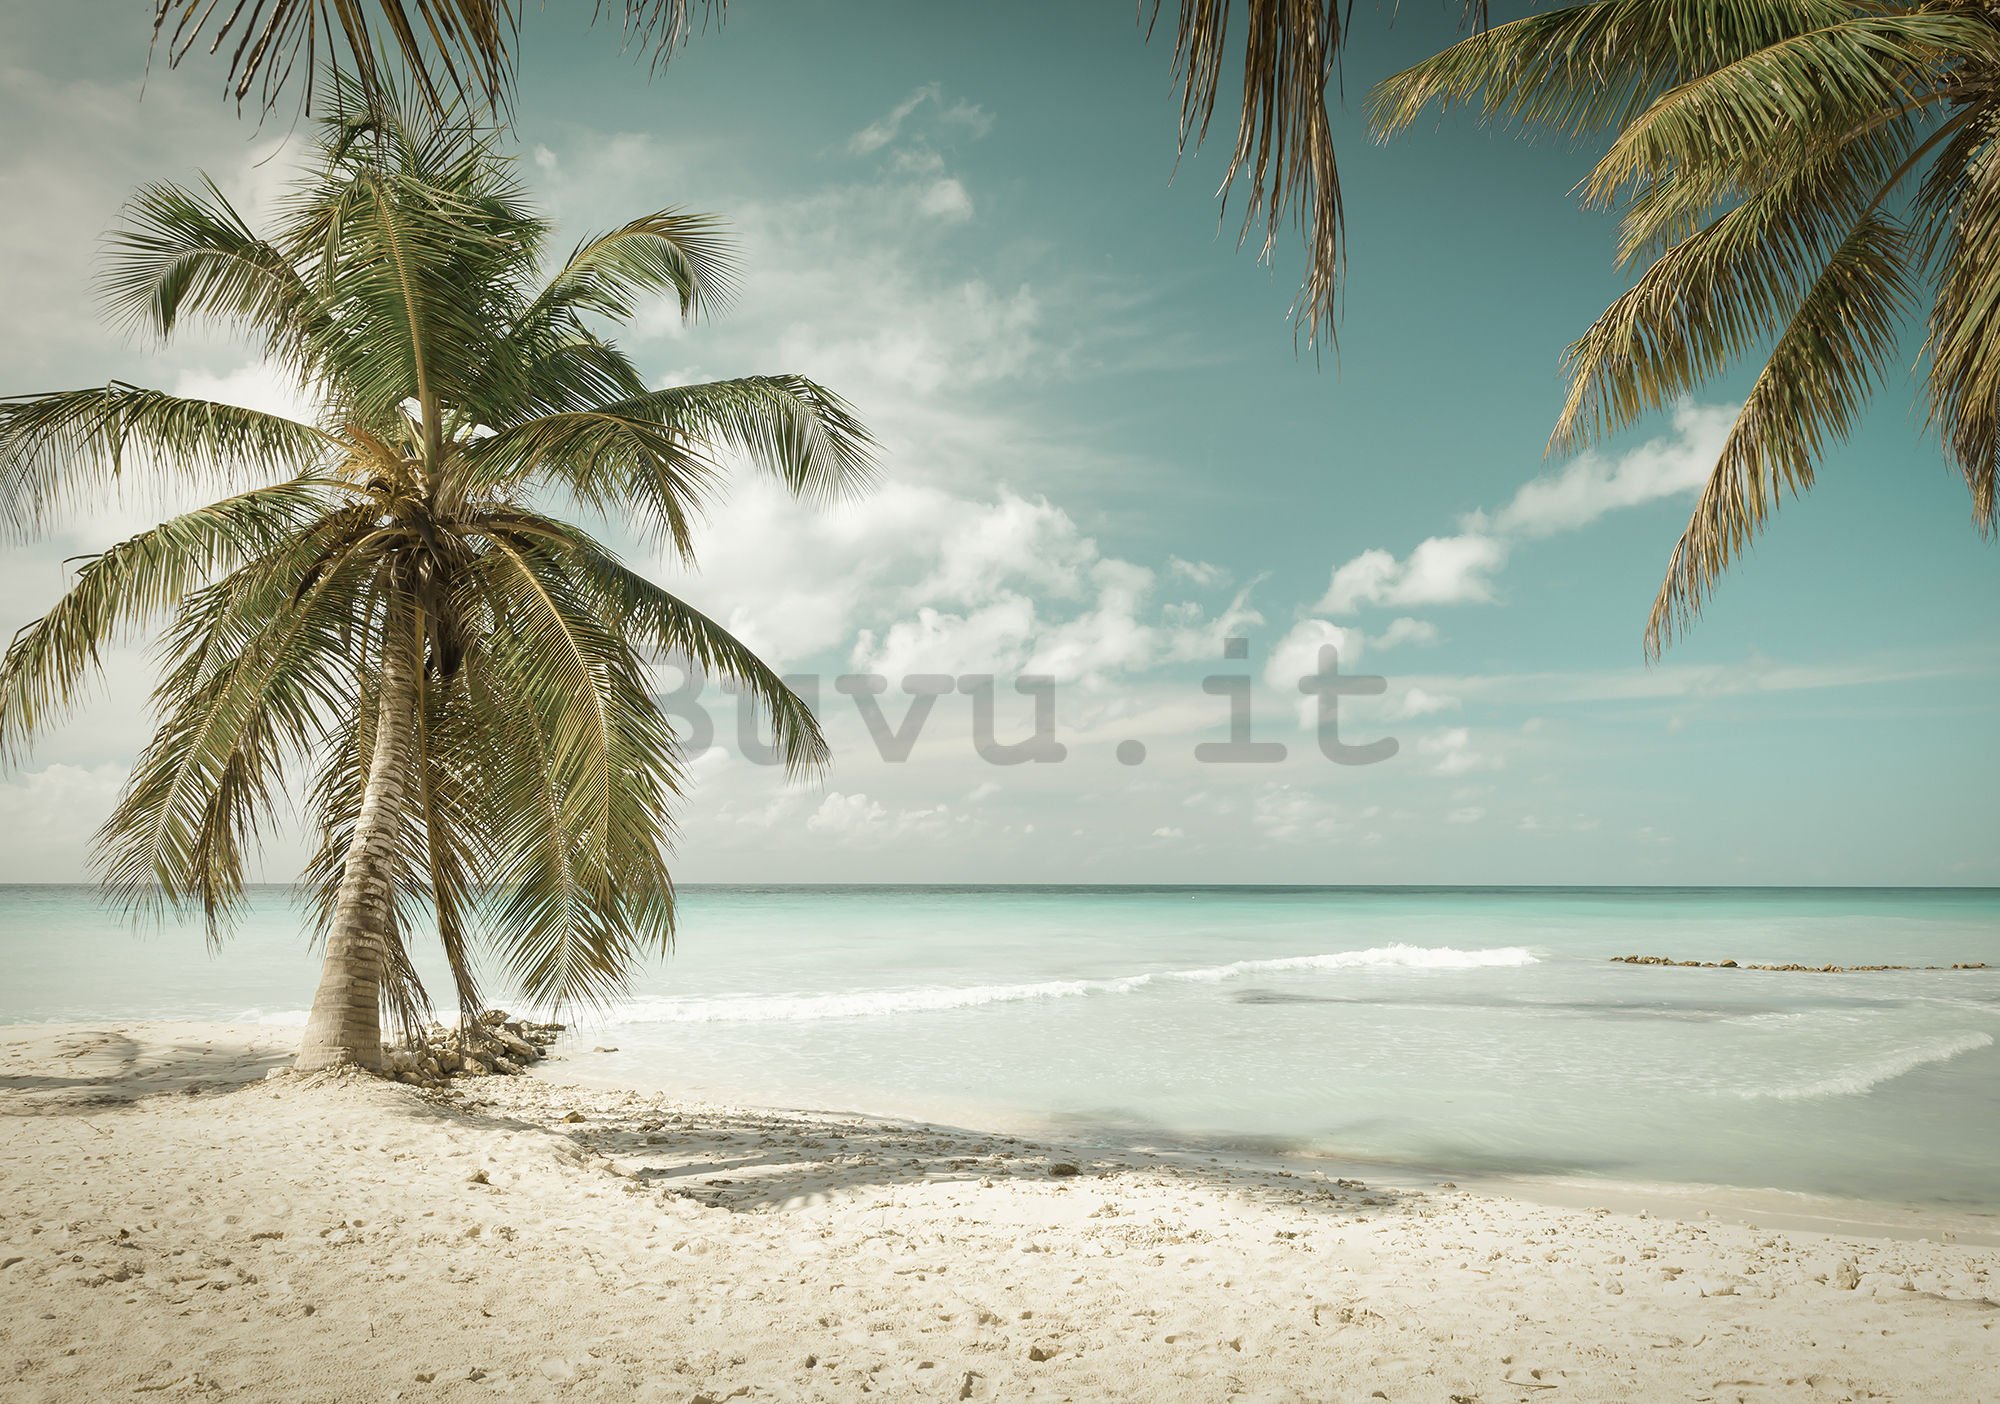 Fotomurale in TNT: Le palme sul mare - 254x368 cm